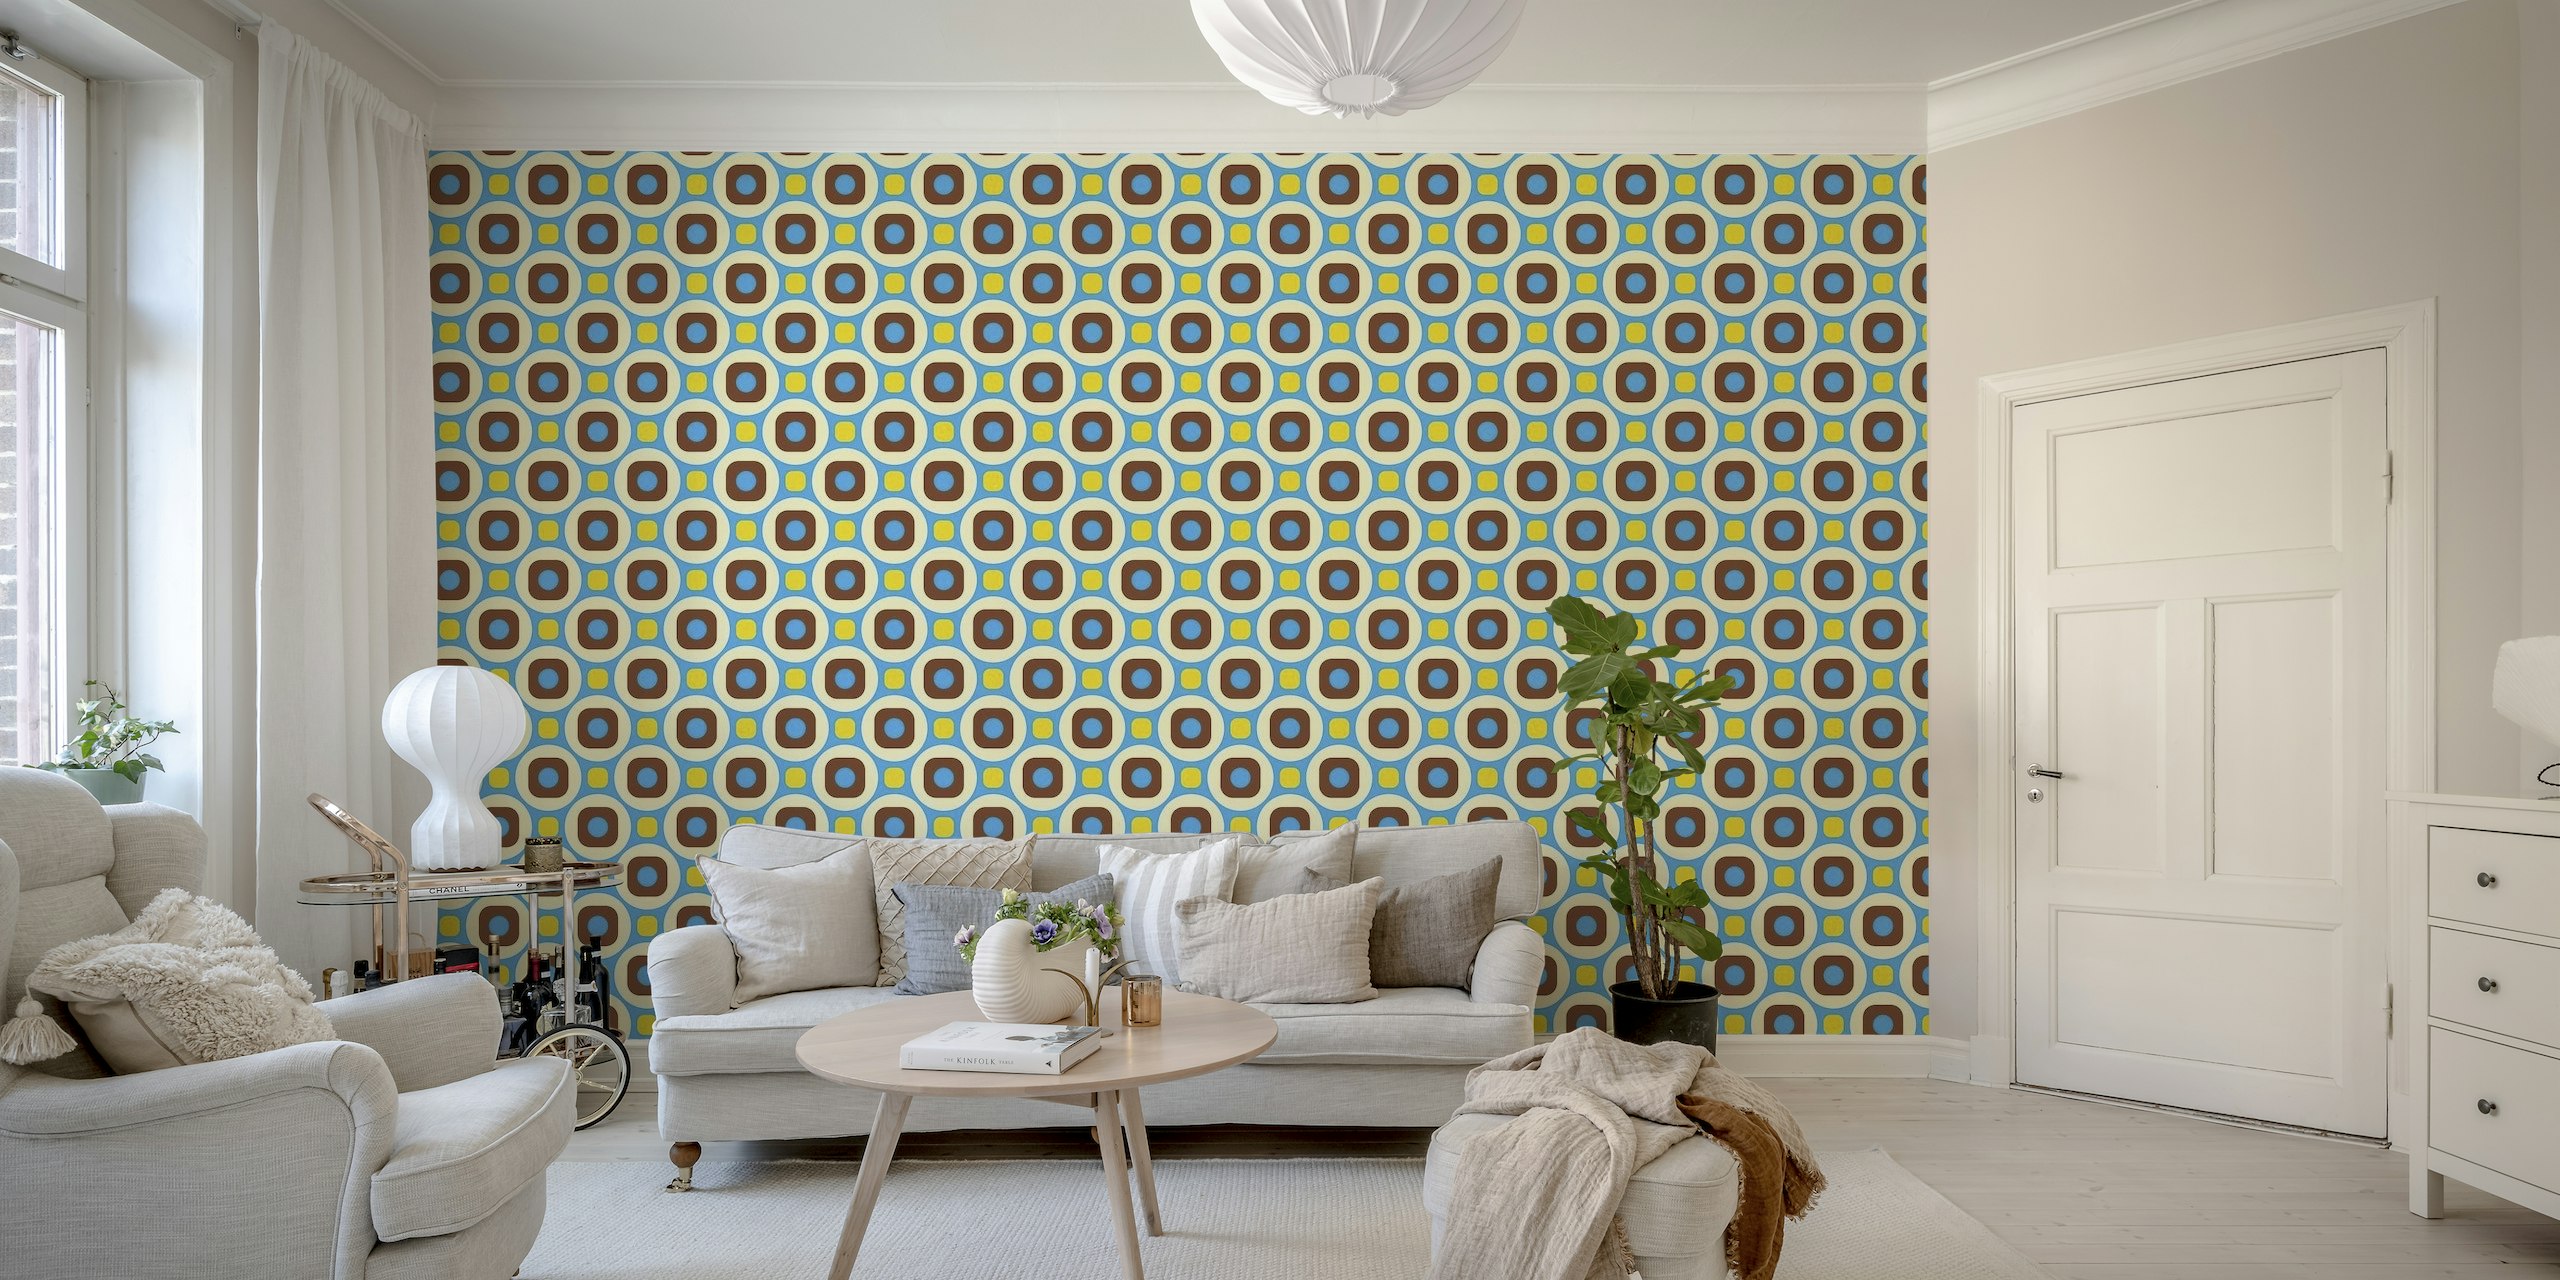 Retro geometrisk mønster vægmaleri med blå, gule og brune former på en hvid baggrund